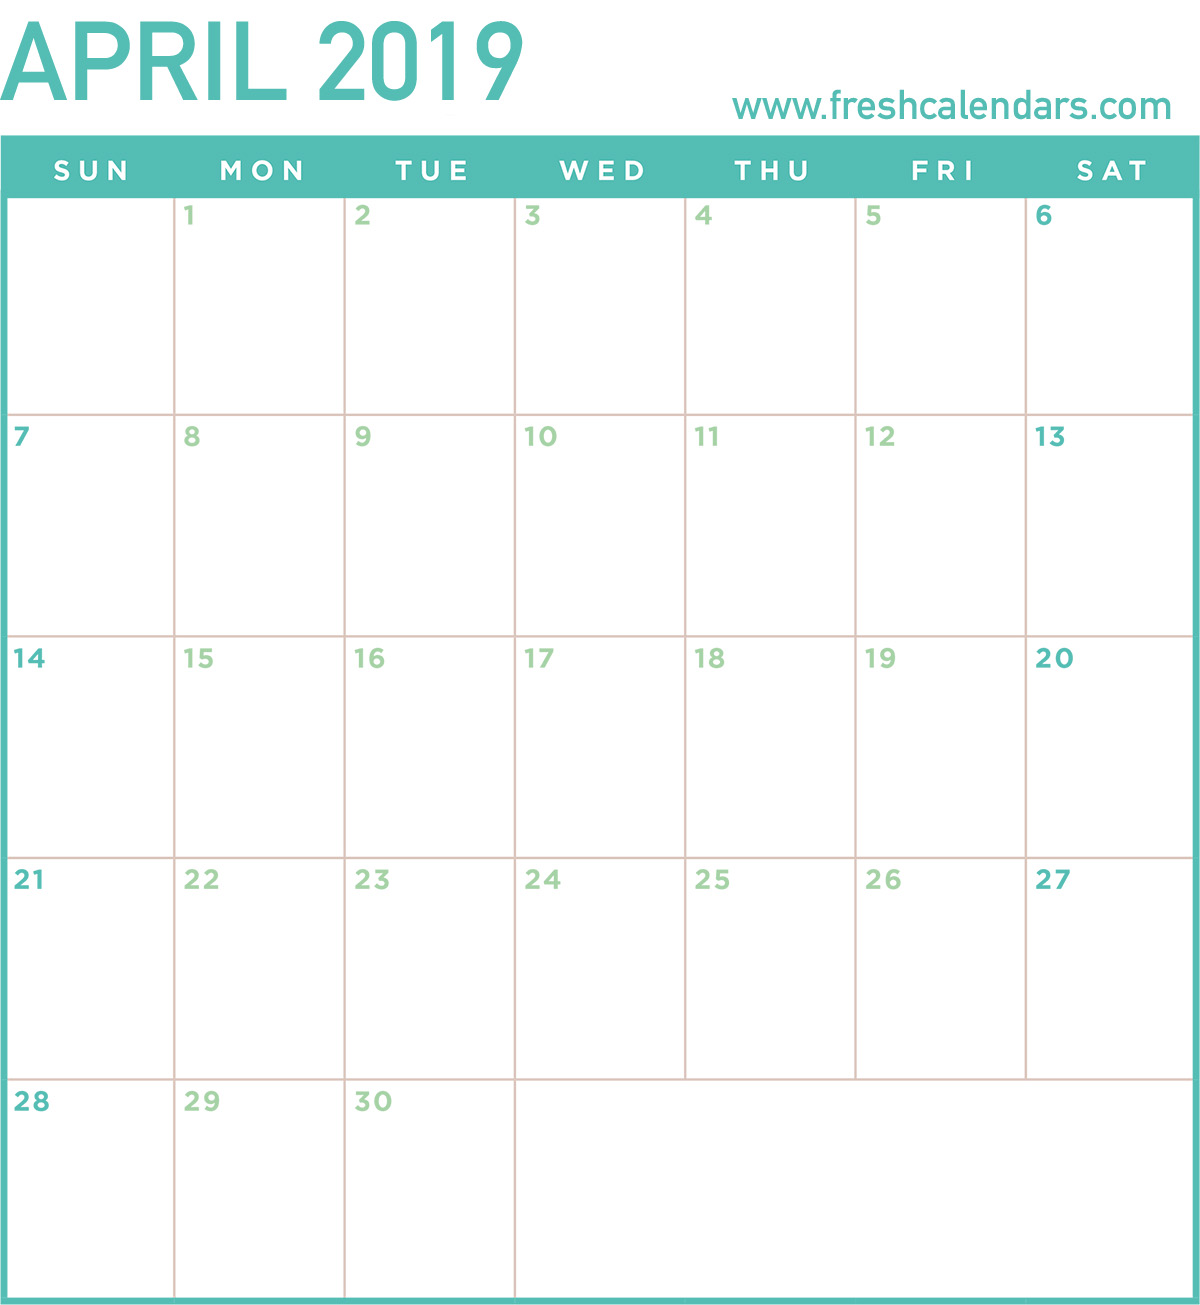 april-2019-calendar-us-holidays-april-2019calendar-april2019calendar